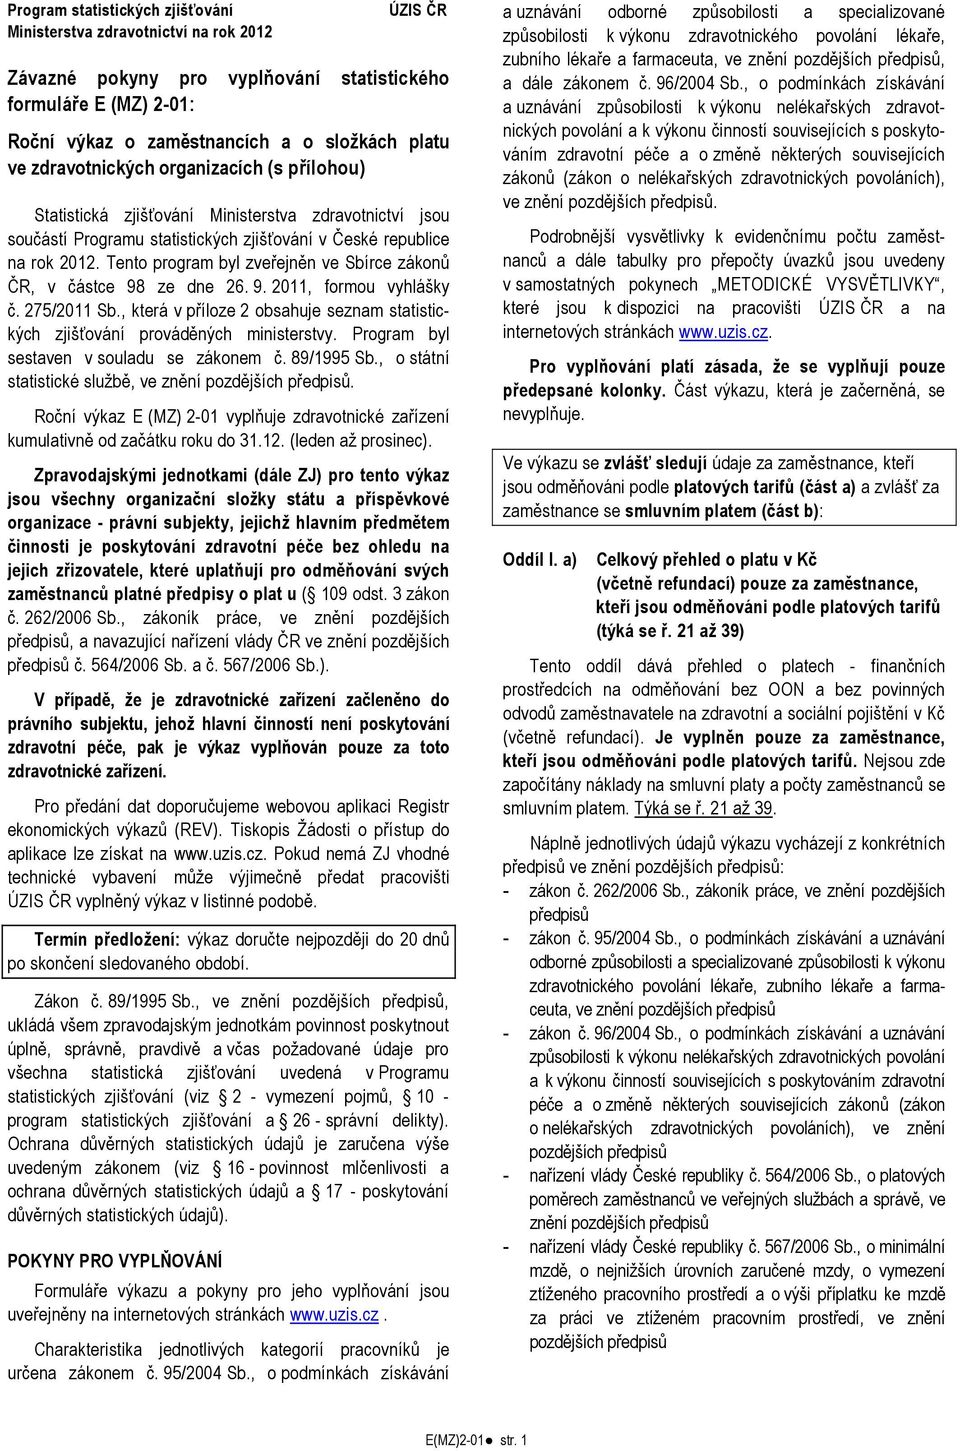 Tento program byl zveřejněn ve Sbírce zákonů ČR, v částce 98 ze dne 26. 9. 2011, formou vyhlášky č. 275/2011 Sb., která v příloze 2 obsahuje seznam statistických zjišťování prováděných ministerstvy.